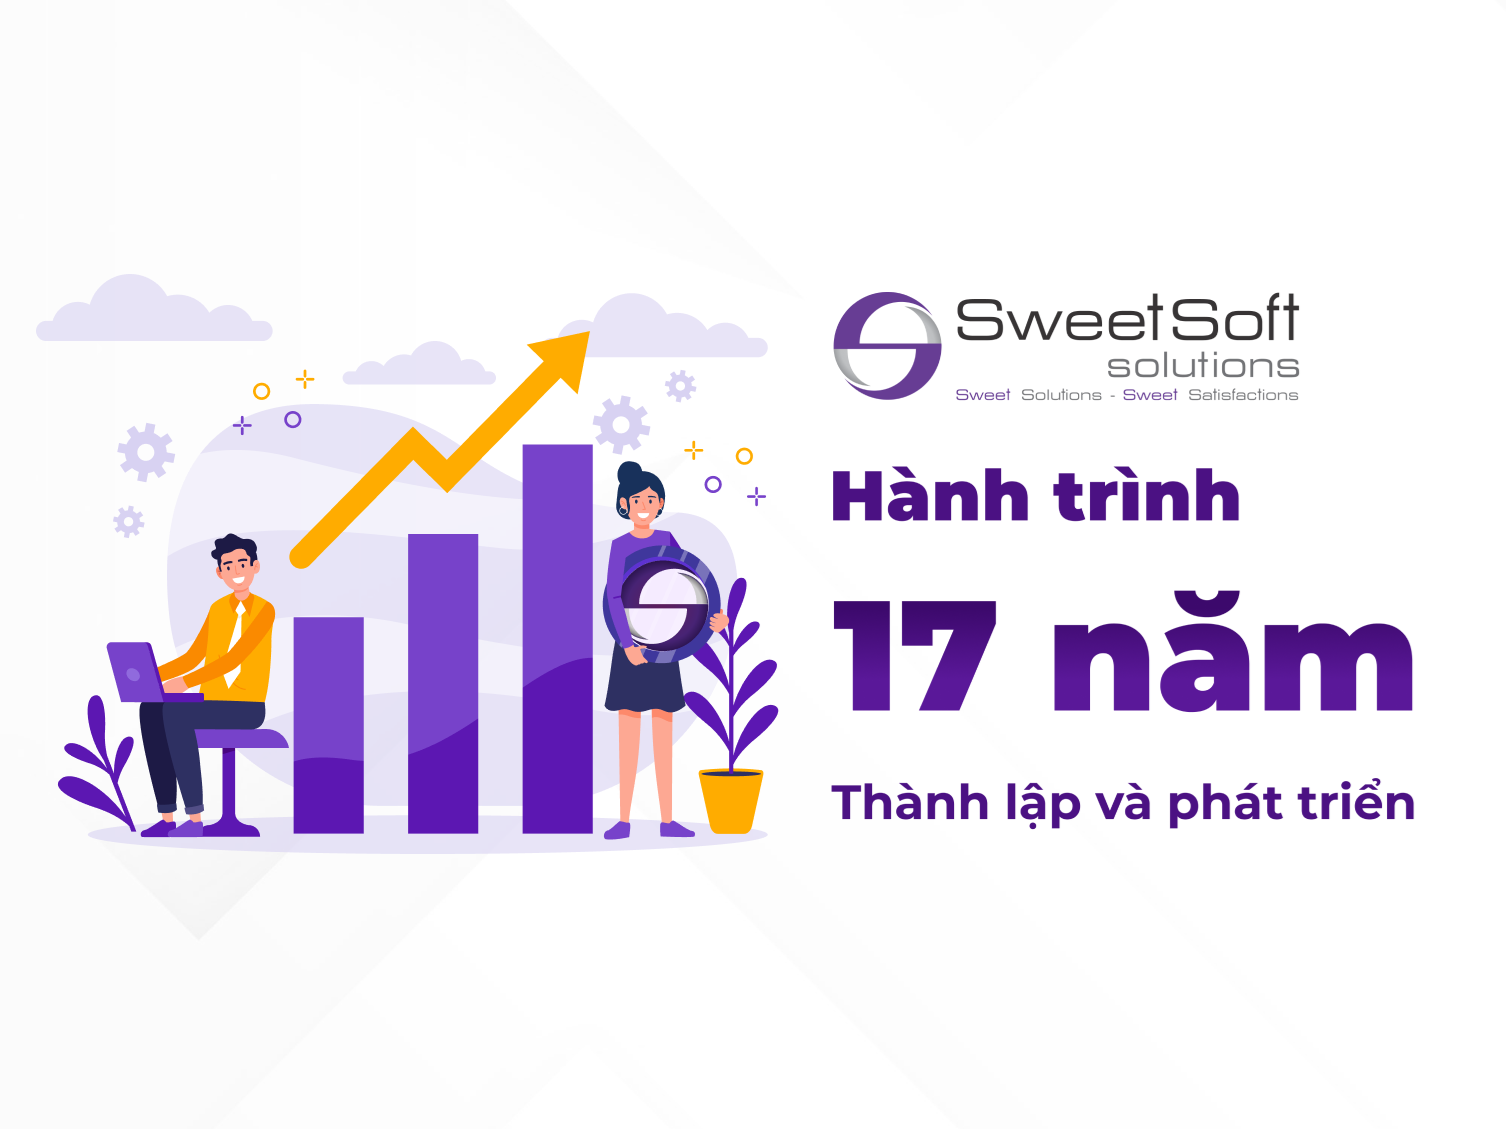 Kỷ niệm hành trình 17 năm SweetSoft thành lập và phát triển